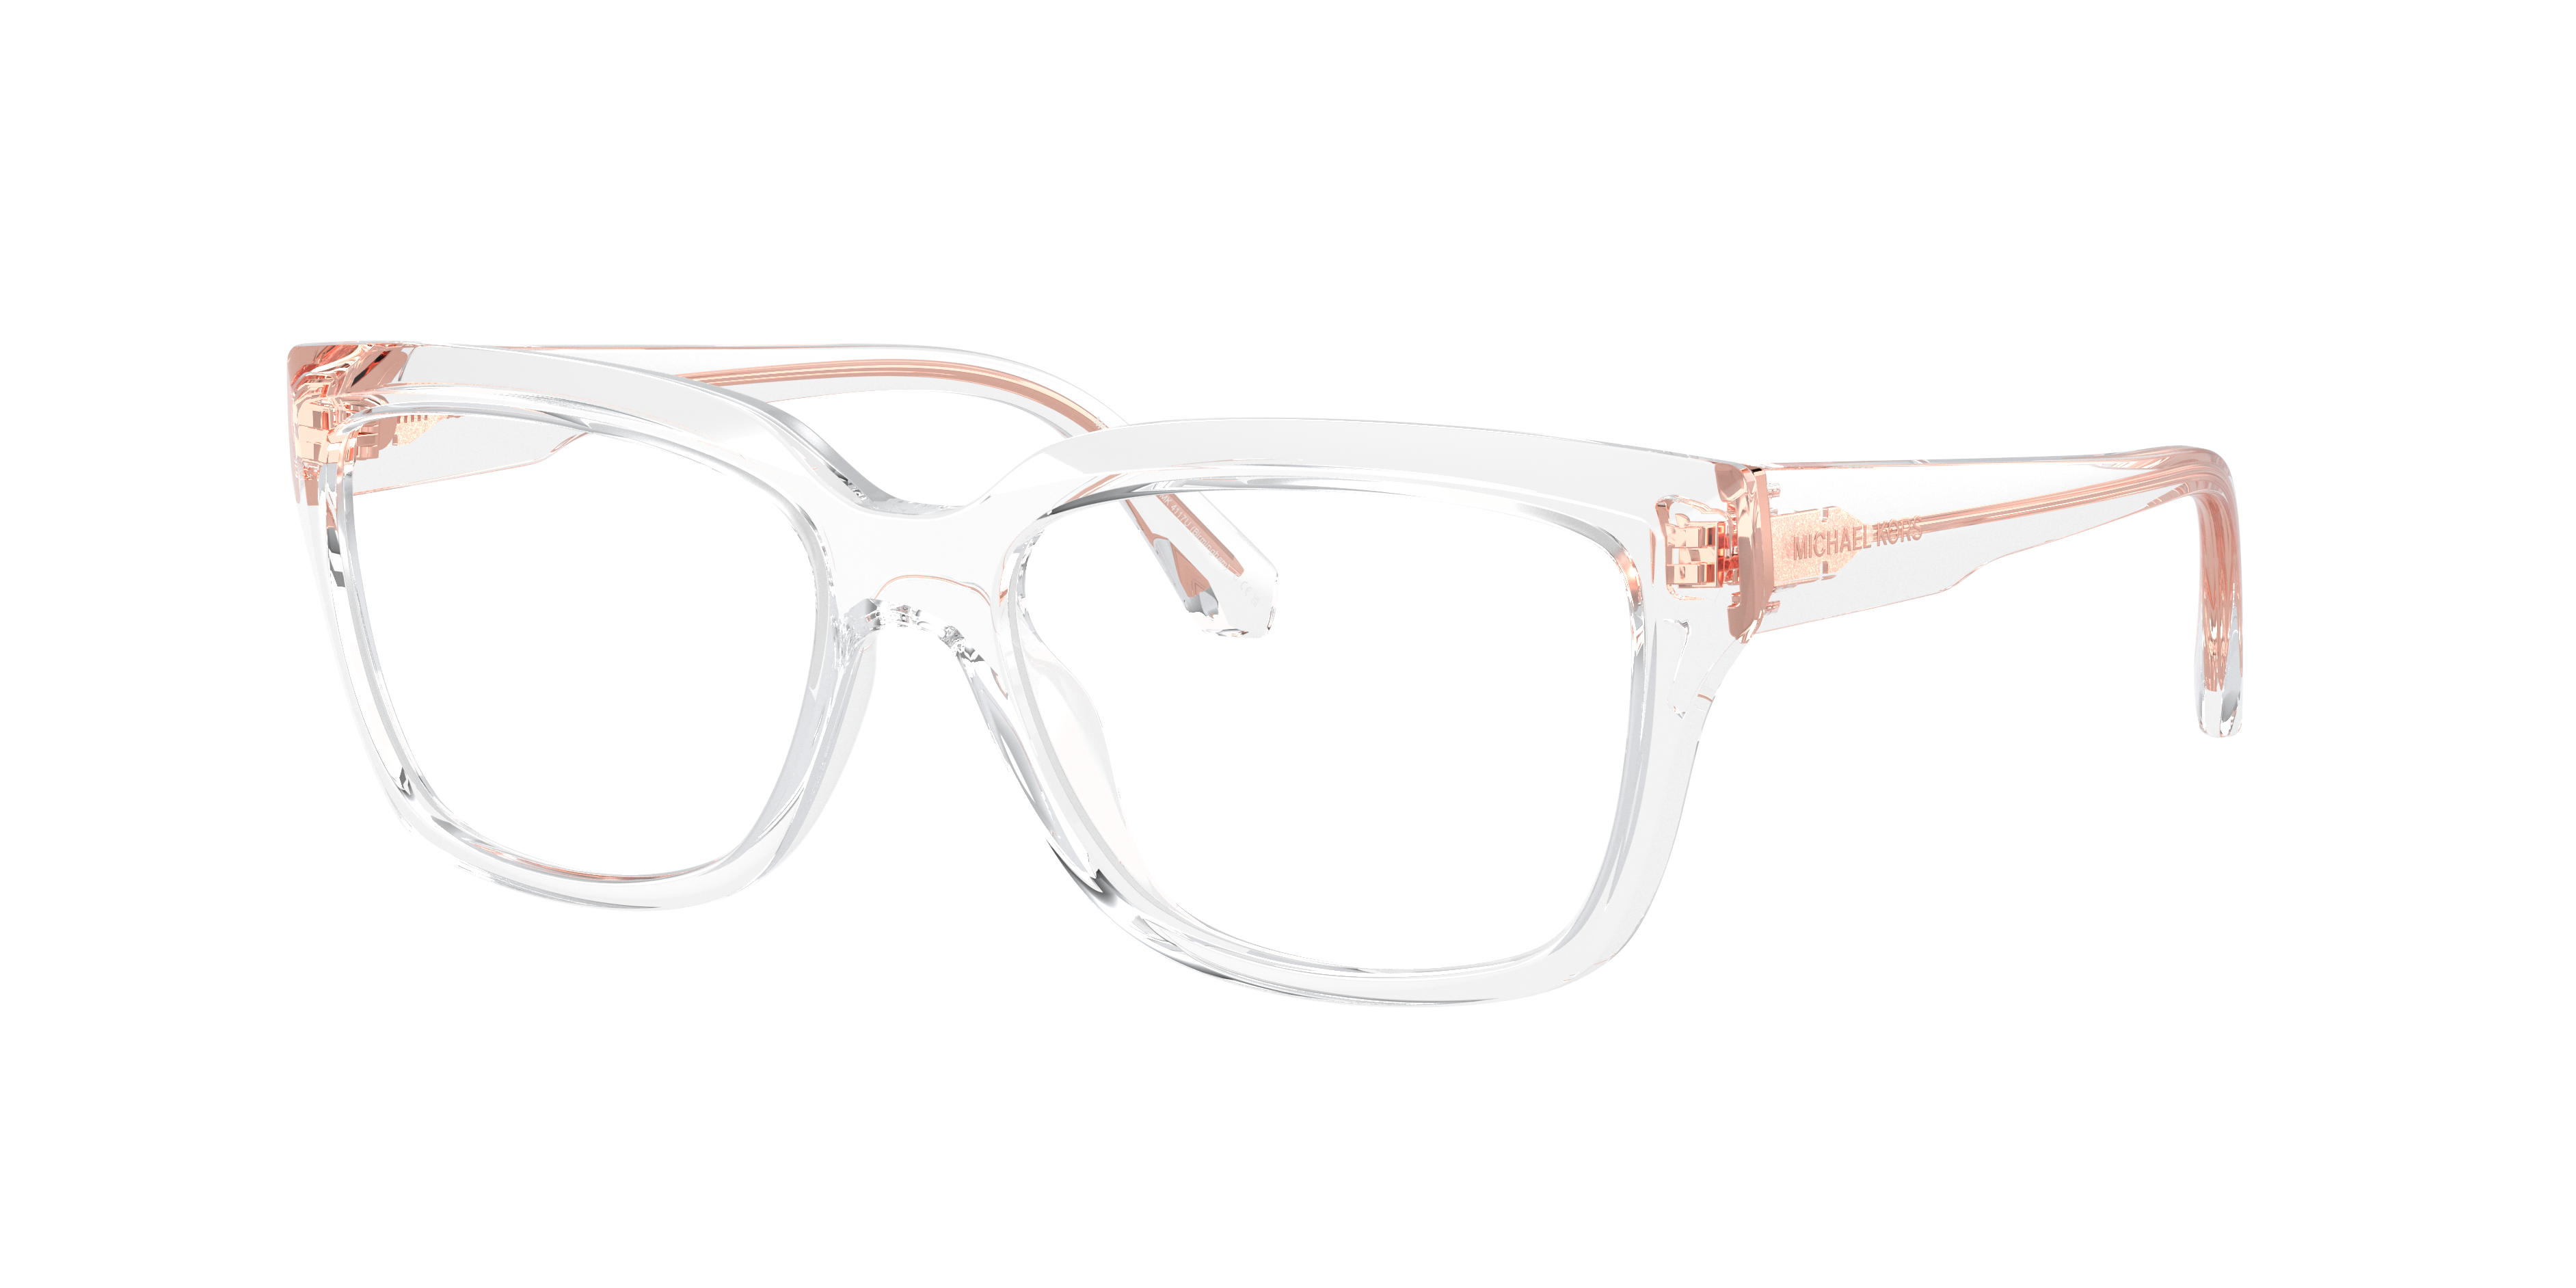 Michael Kors MK4058 Caracas Eyeglasses | LensCrafters